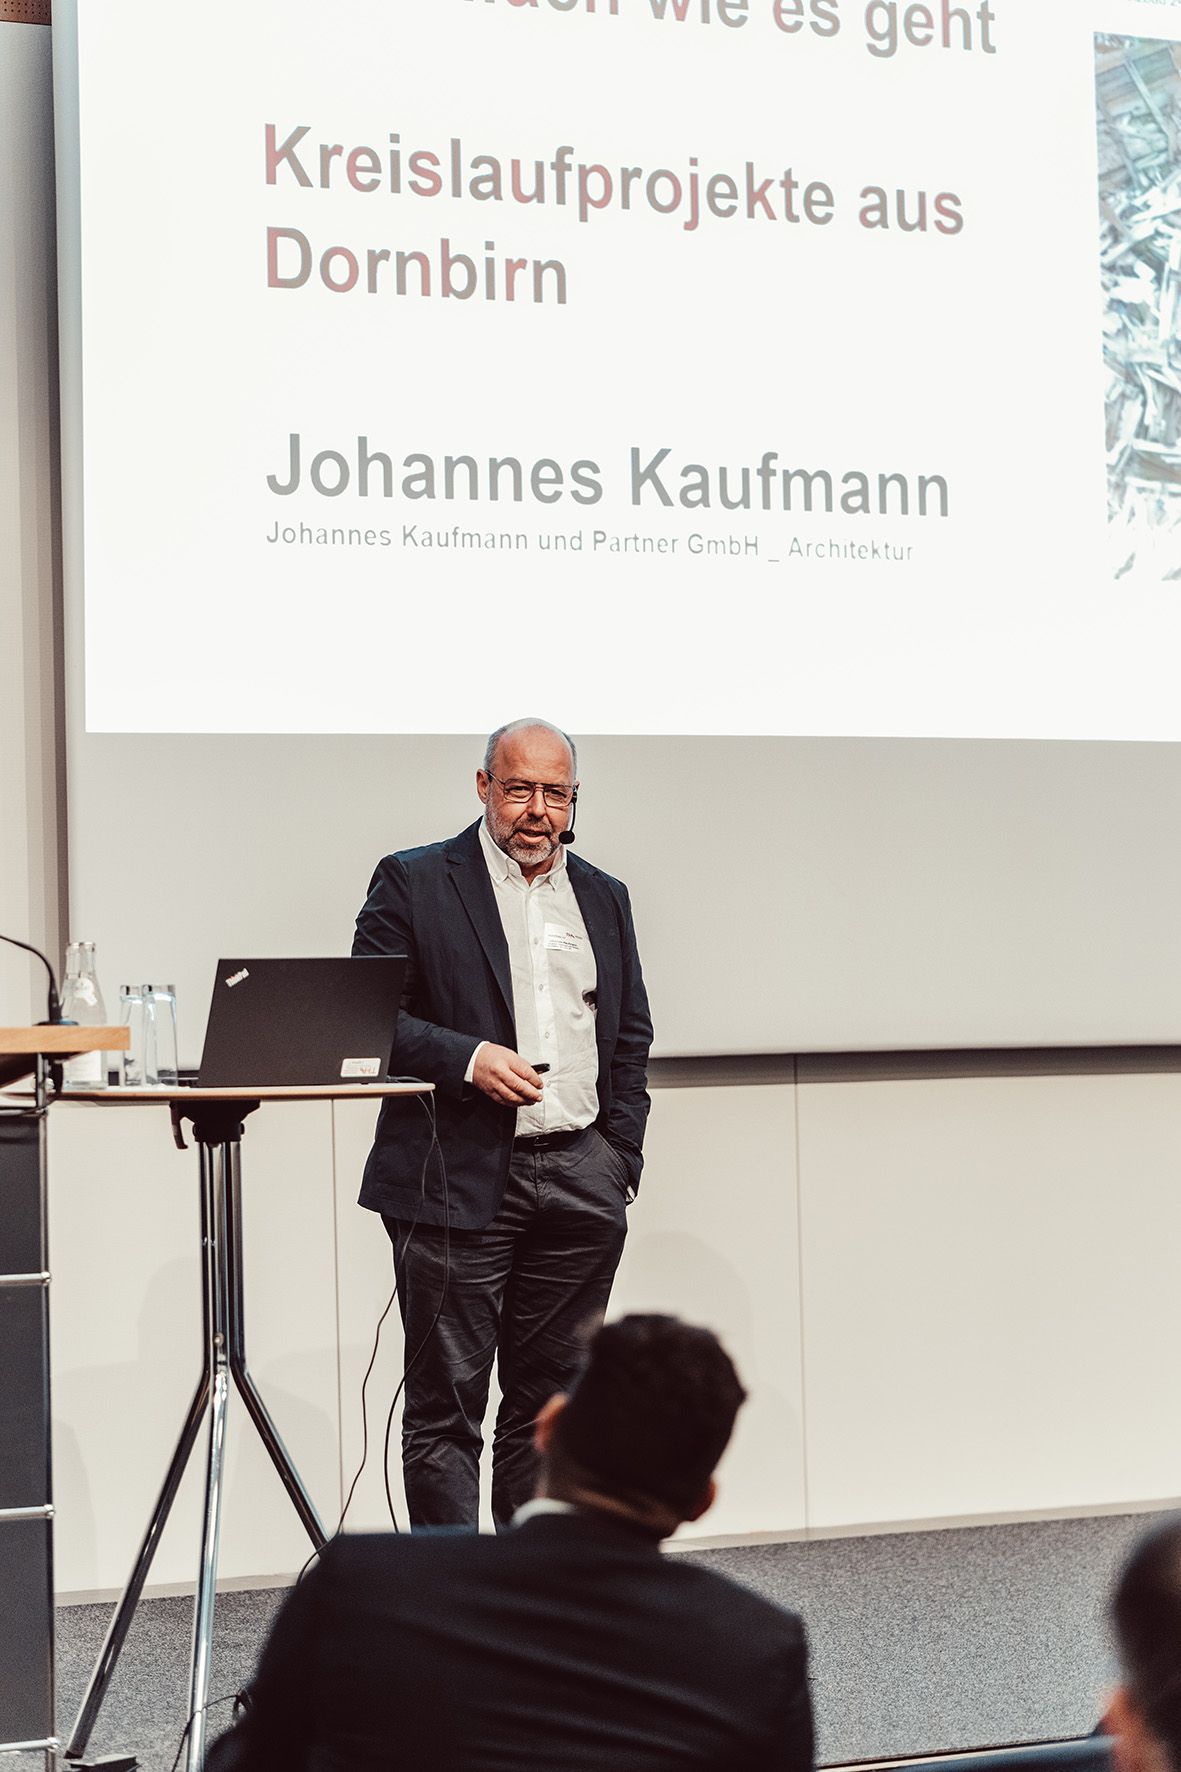 Johannes Kaufmann, JK & Partner Architekten Dornbirn und Wien. Foto: Matthias Leo.